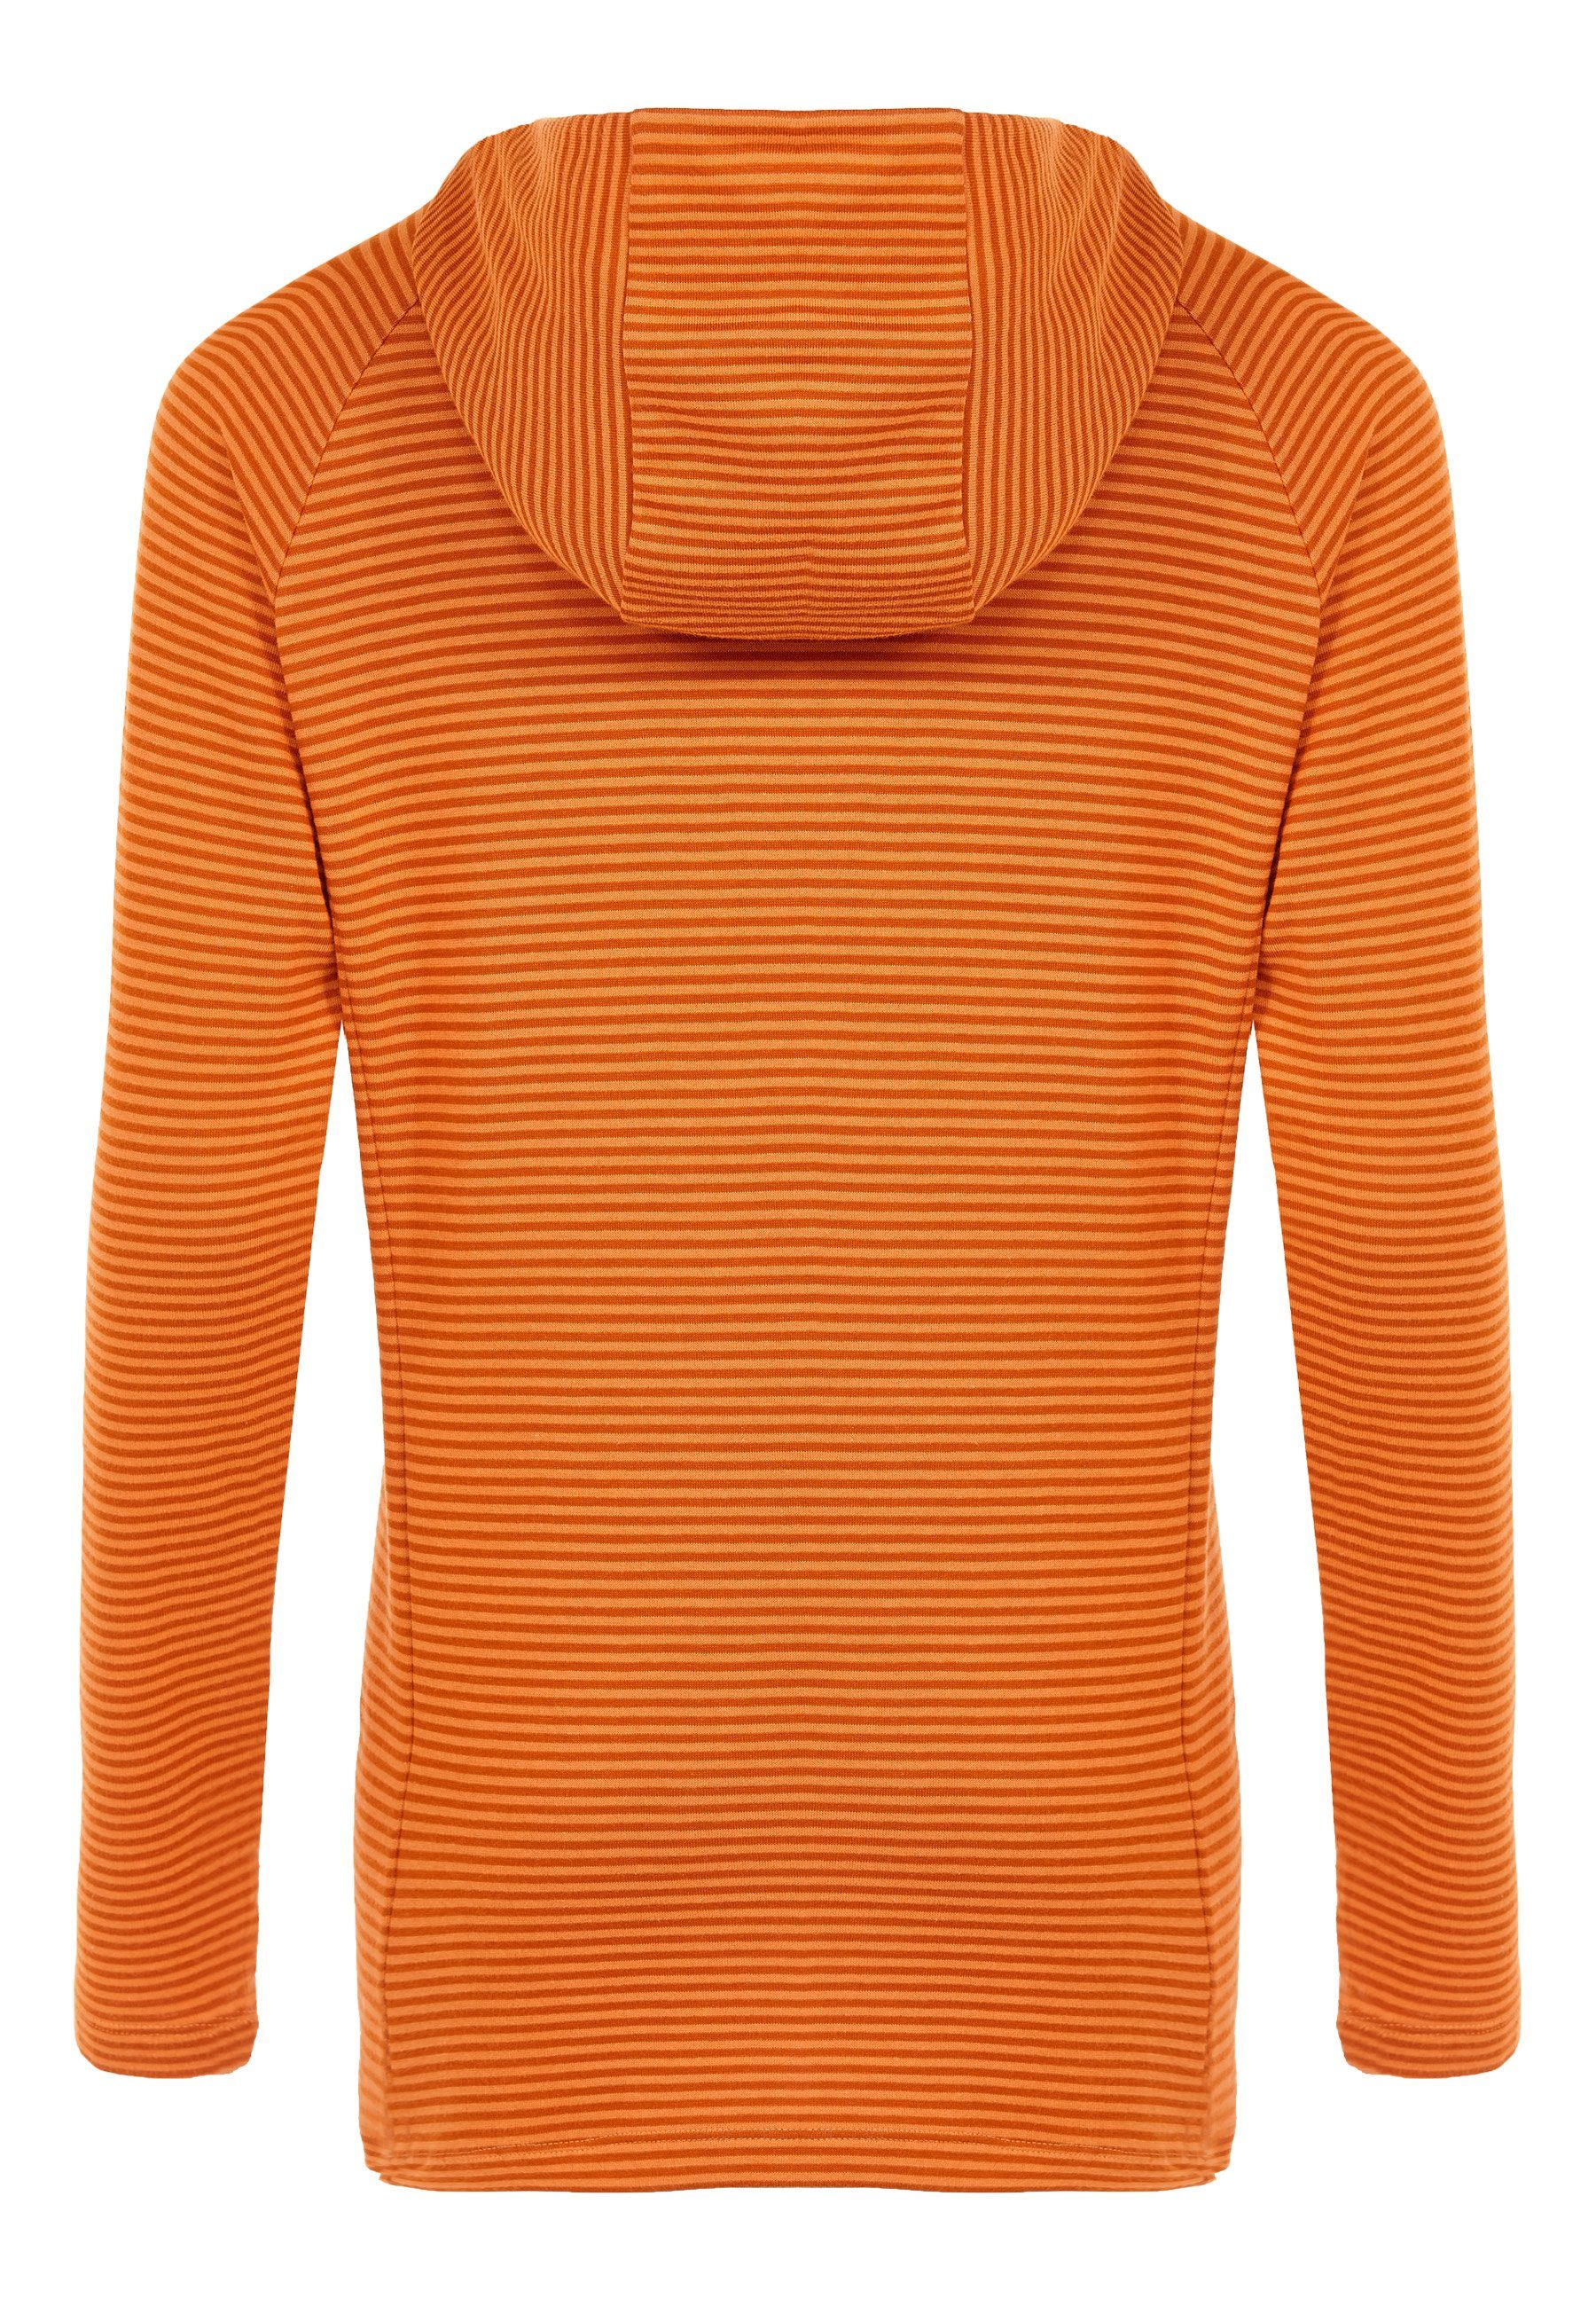 Kapuzenpullover darkorange Wetter mandarin Hoodie Elkline Streifen leicht Sweater - tailliert